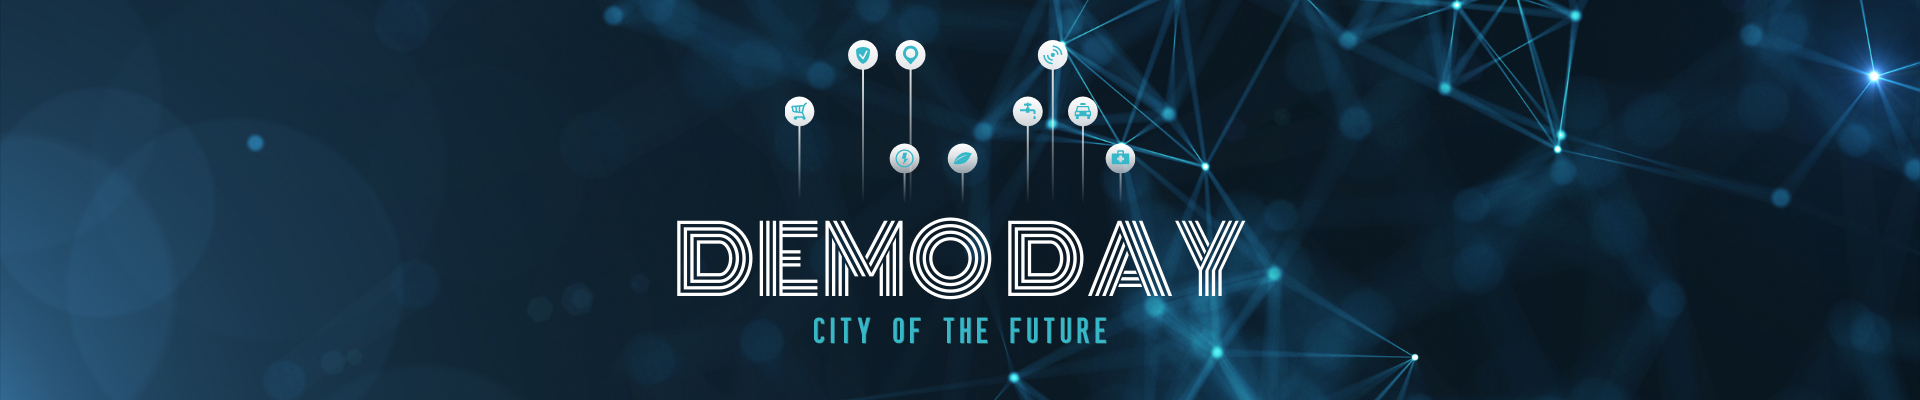 MRDH City of the Future - Demo Day 